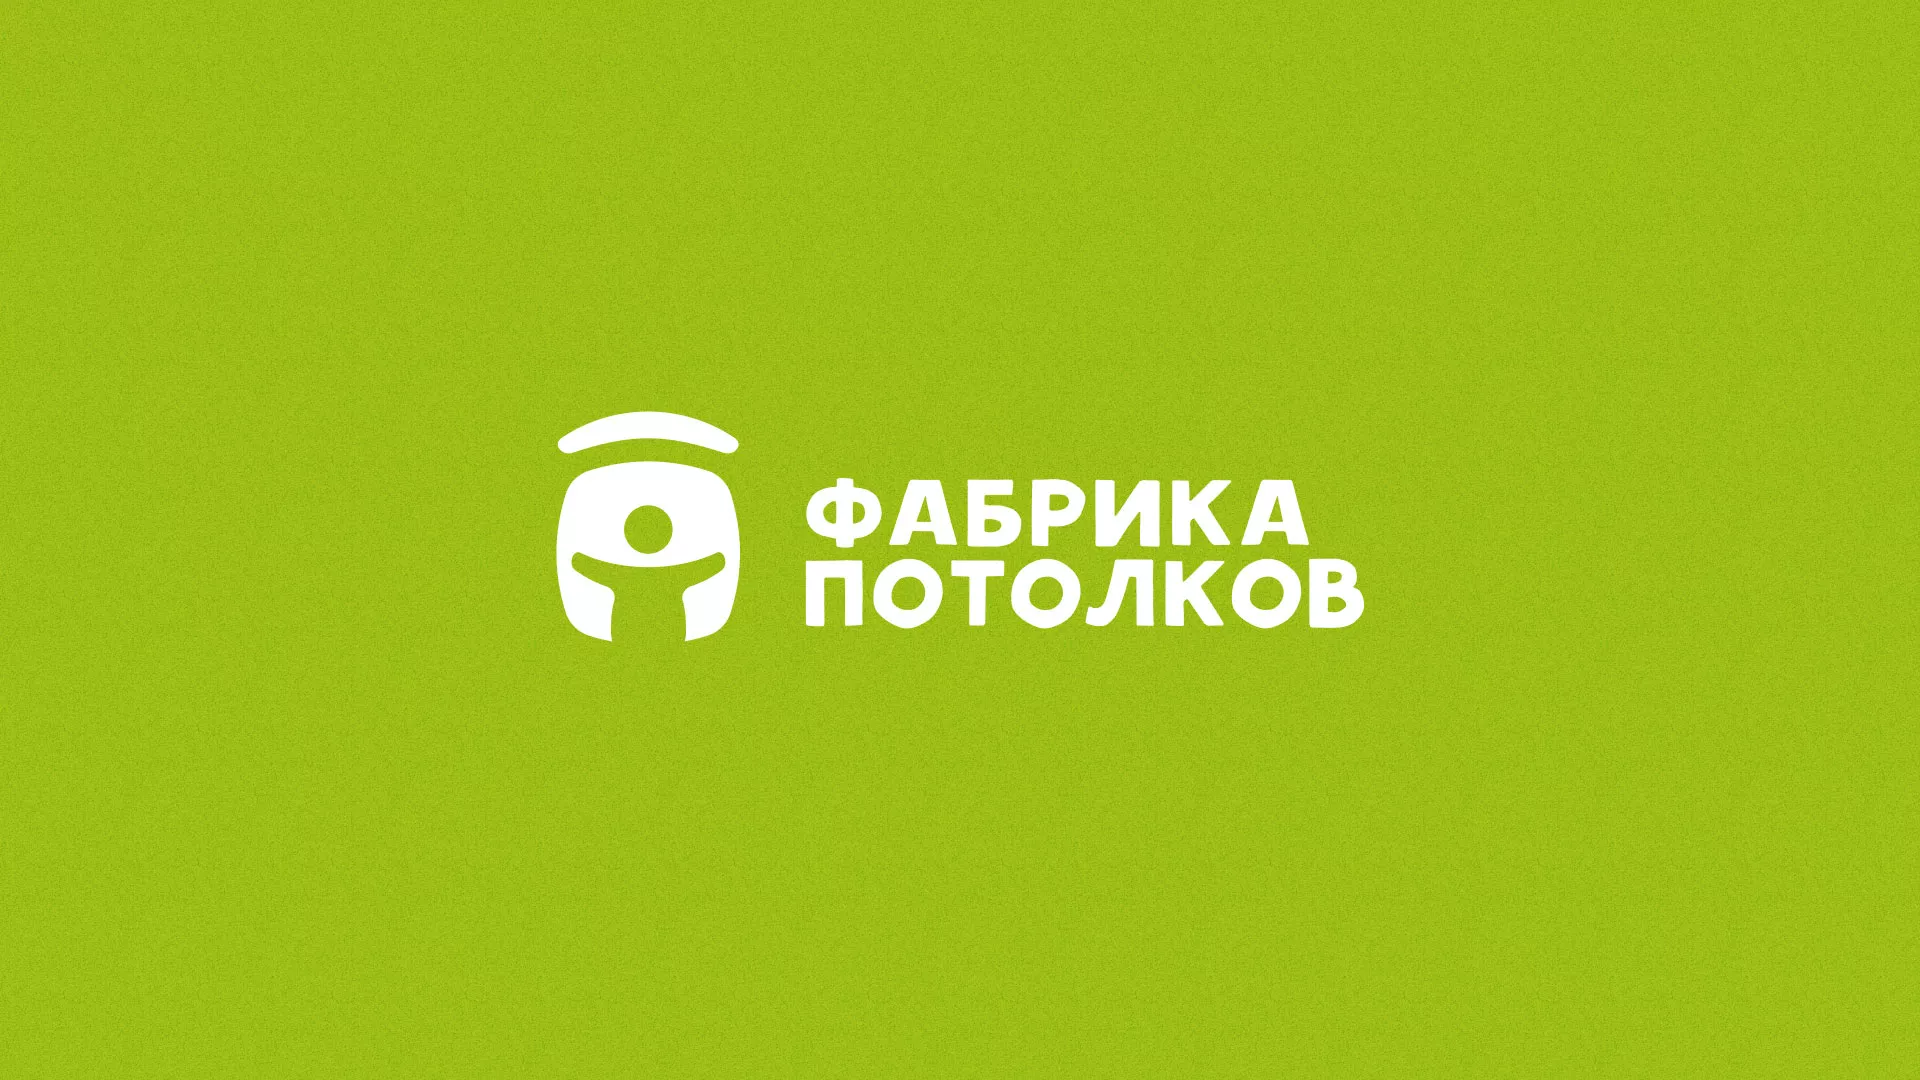 Разработка логотипа для производства натяжных потолков в Саранске